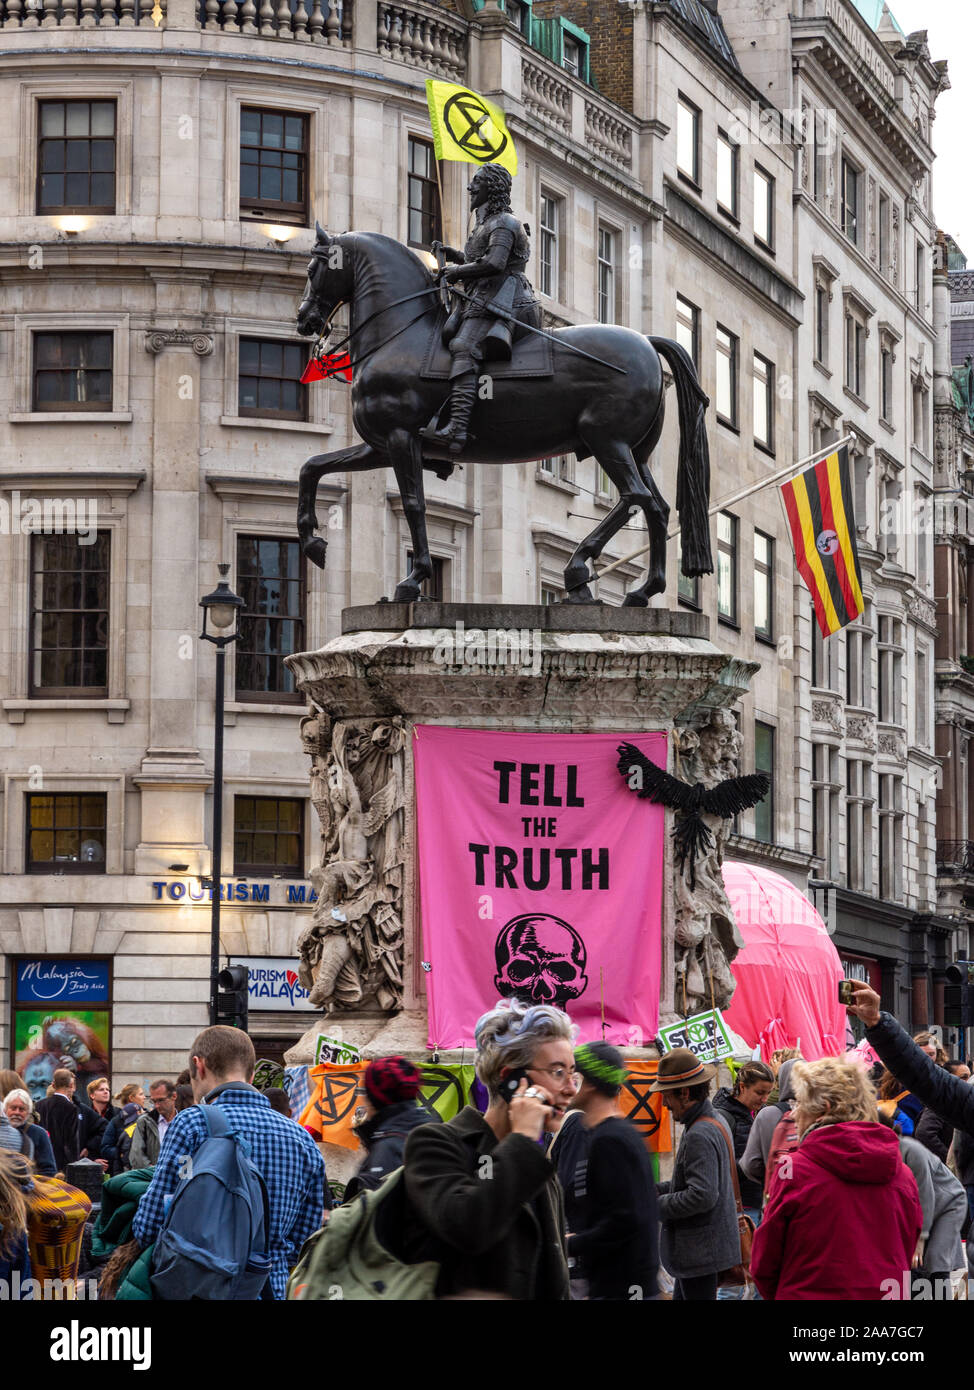 Londres, Angleterre, Royaume-Uni - Octobre 10, 2019 : La statue équestre de Charles je porte un drapeau de la rébellion Extinction lors de manifestations à Trafalgar Square à Banque D'Images